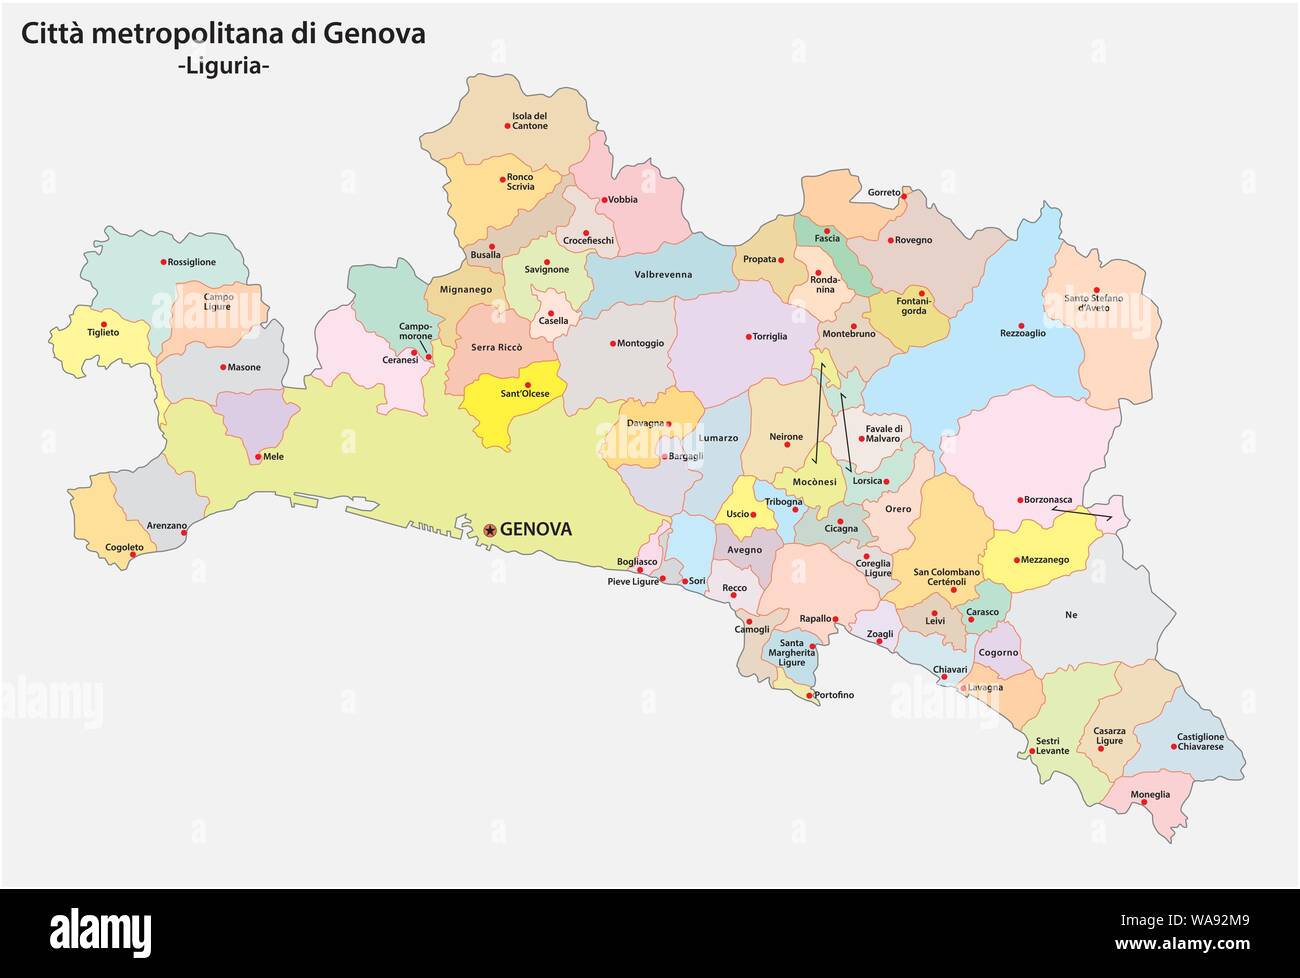 Politica e amministrativa di comunità mappa della città metropolitana di Genova nella regione Liguria Italia Illustrazione Vettoriale